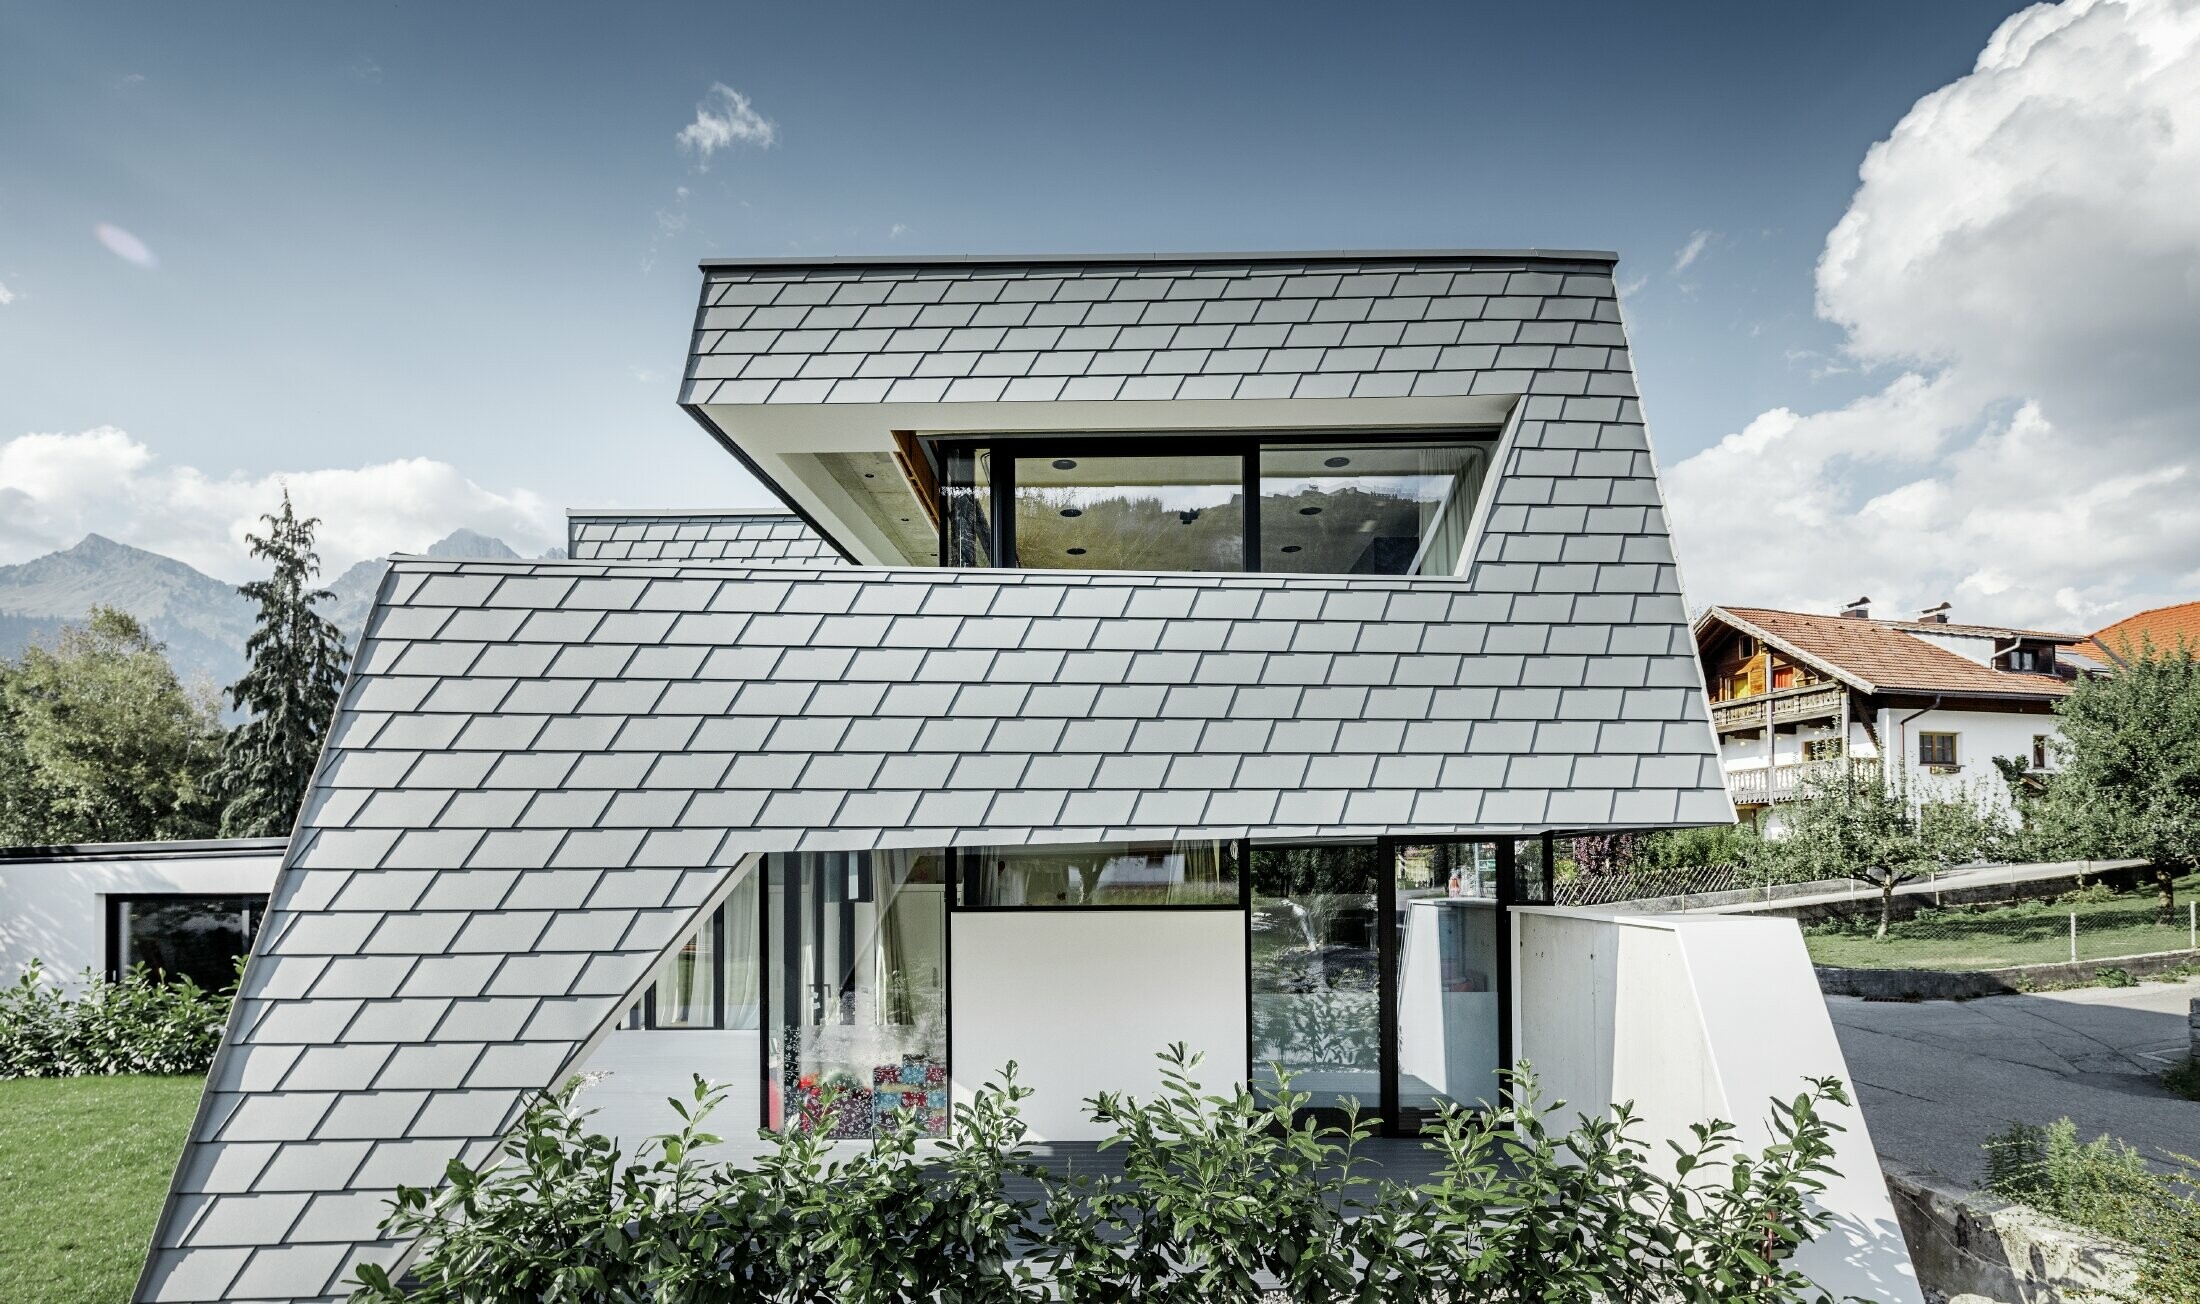 Moderný rodinný dom s plochou strechou, veľkými oknami a šindľovou fasádou v svetlošedom hliníku od firmy PREFA